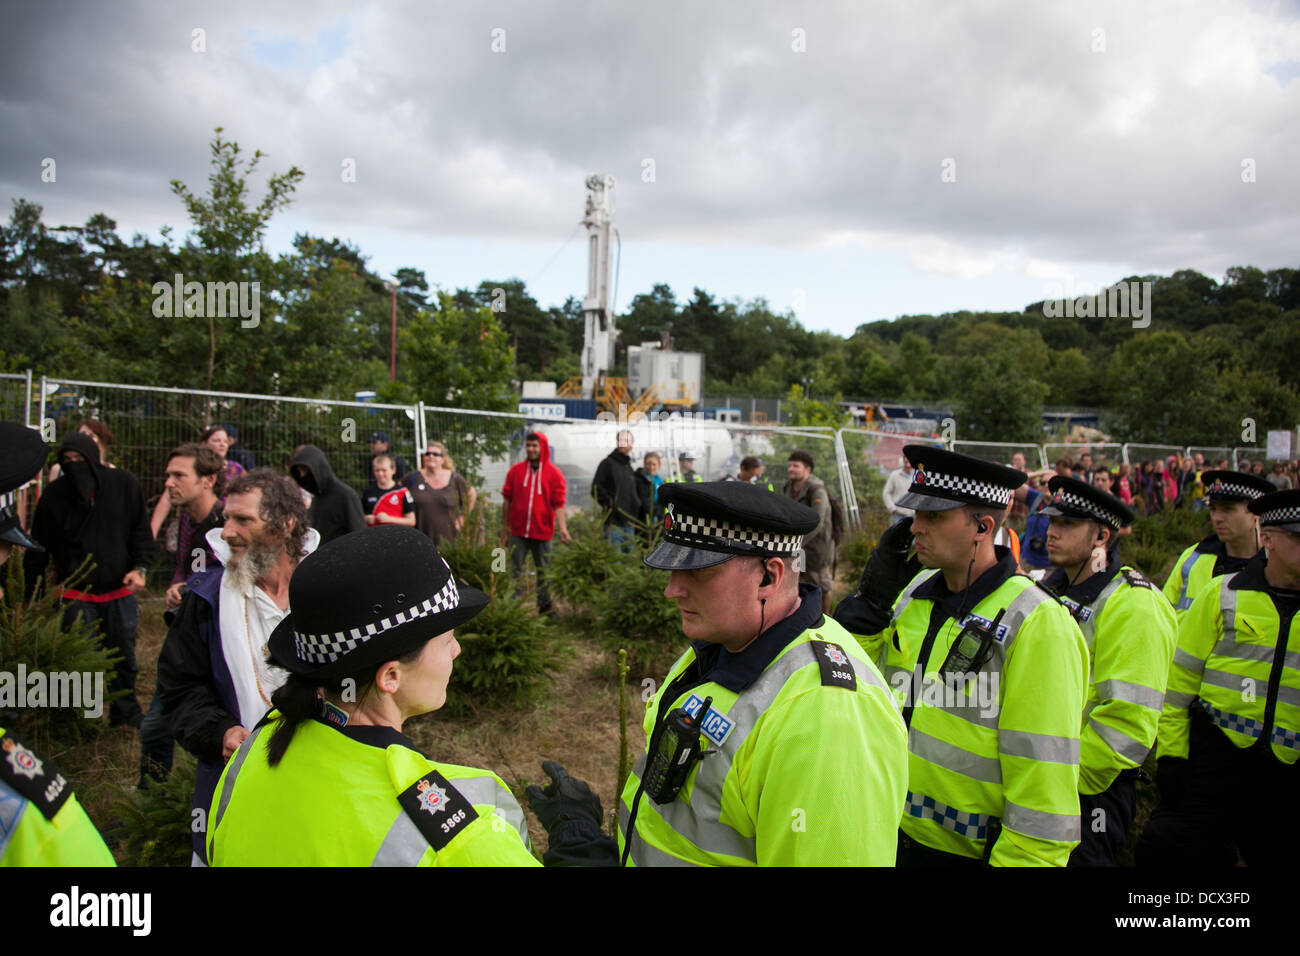 Las líneas de la policía re-organizarse para proteger la cuadrilla fracking sitio de prueba contra pacíficos activistas ambientales. Foto de stock